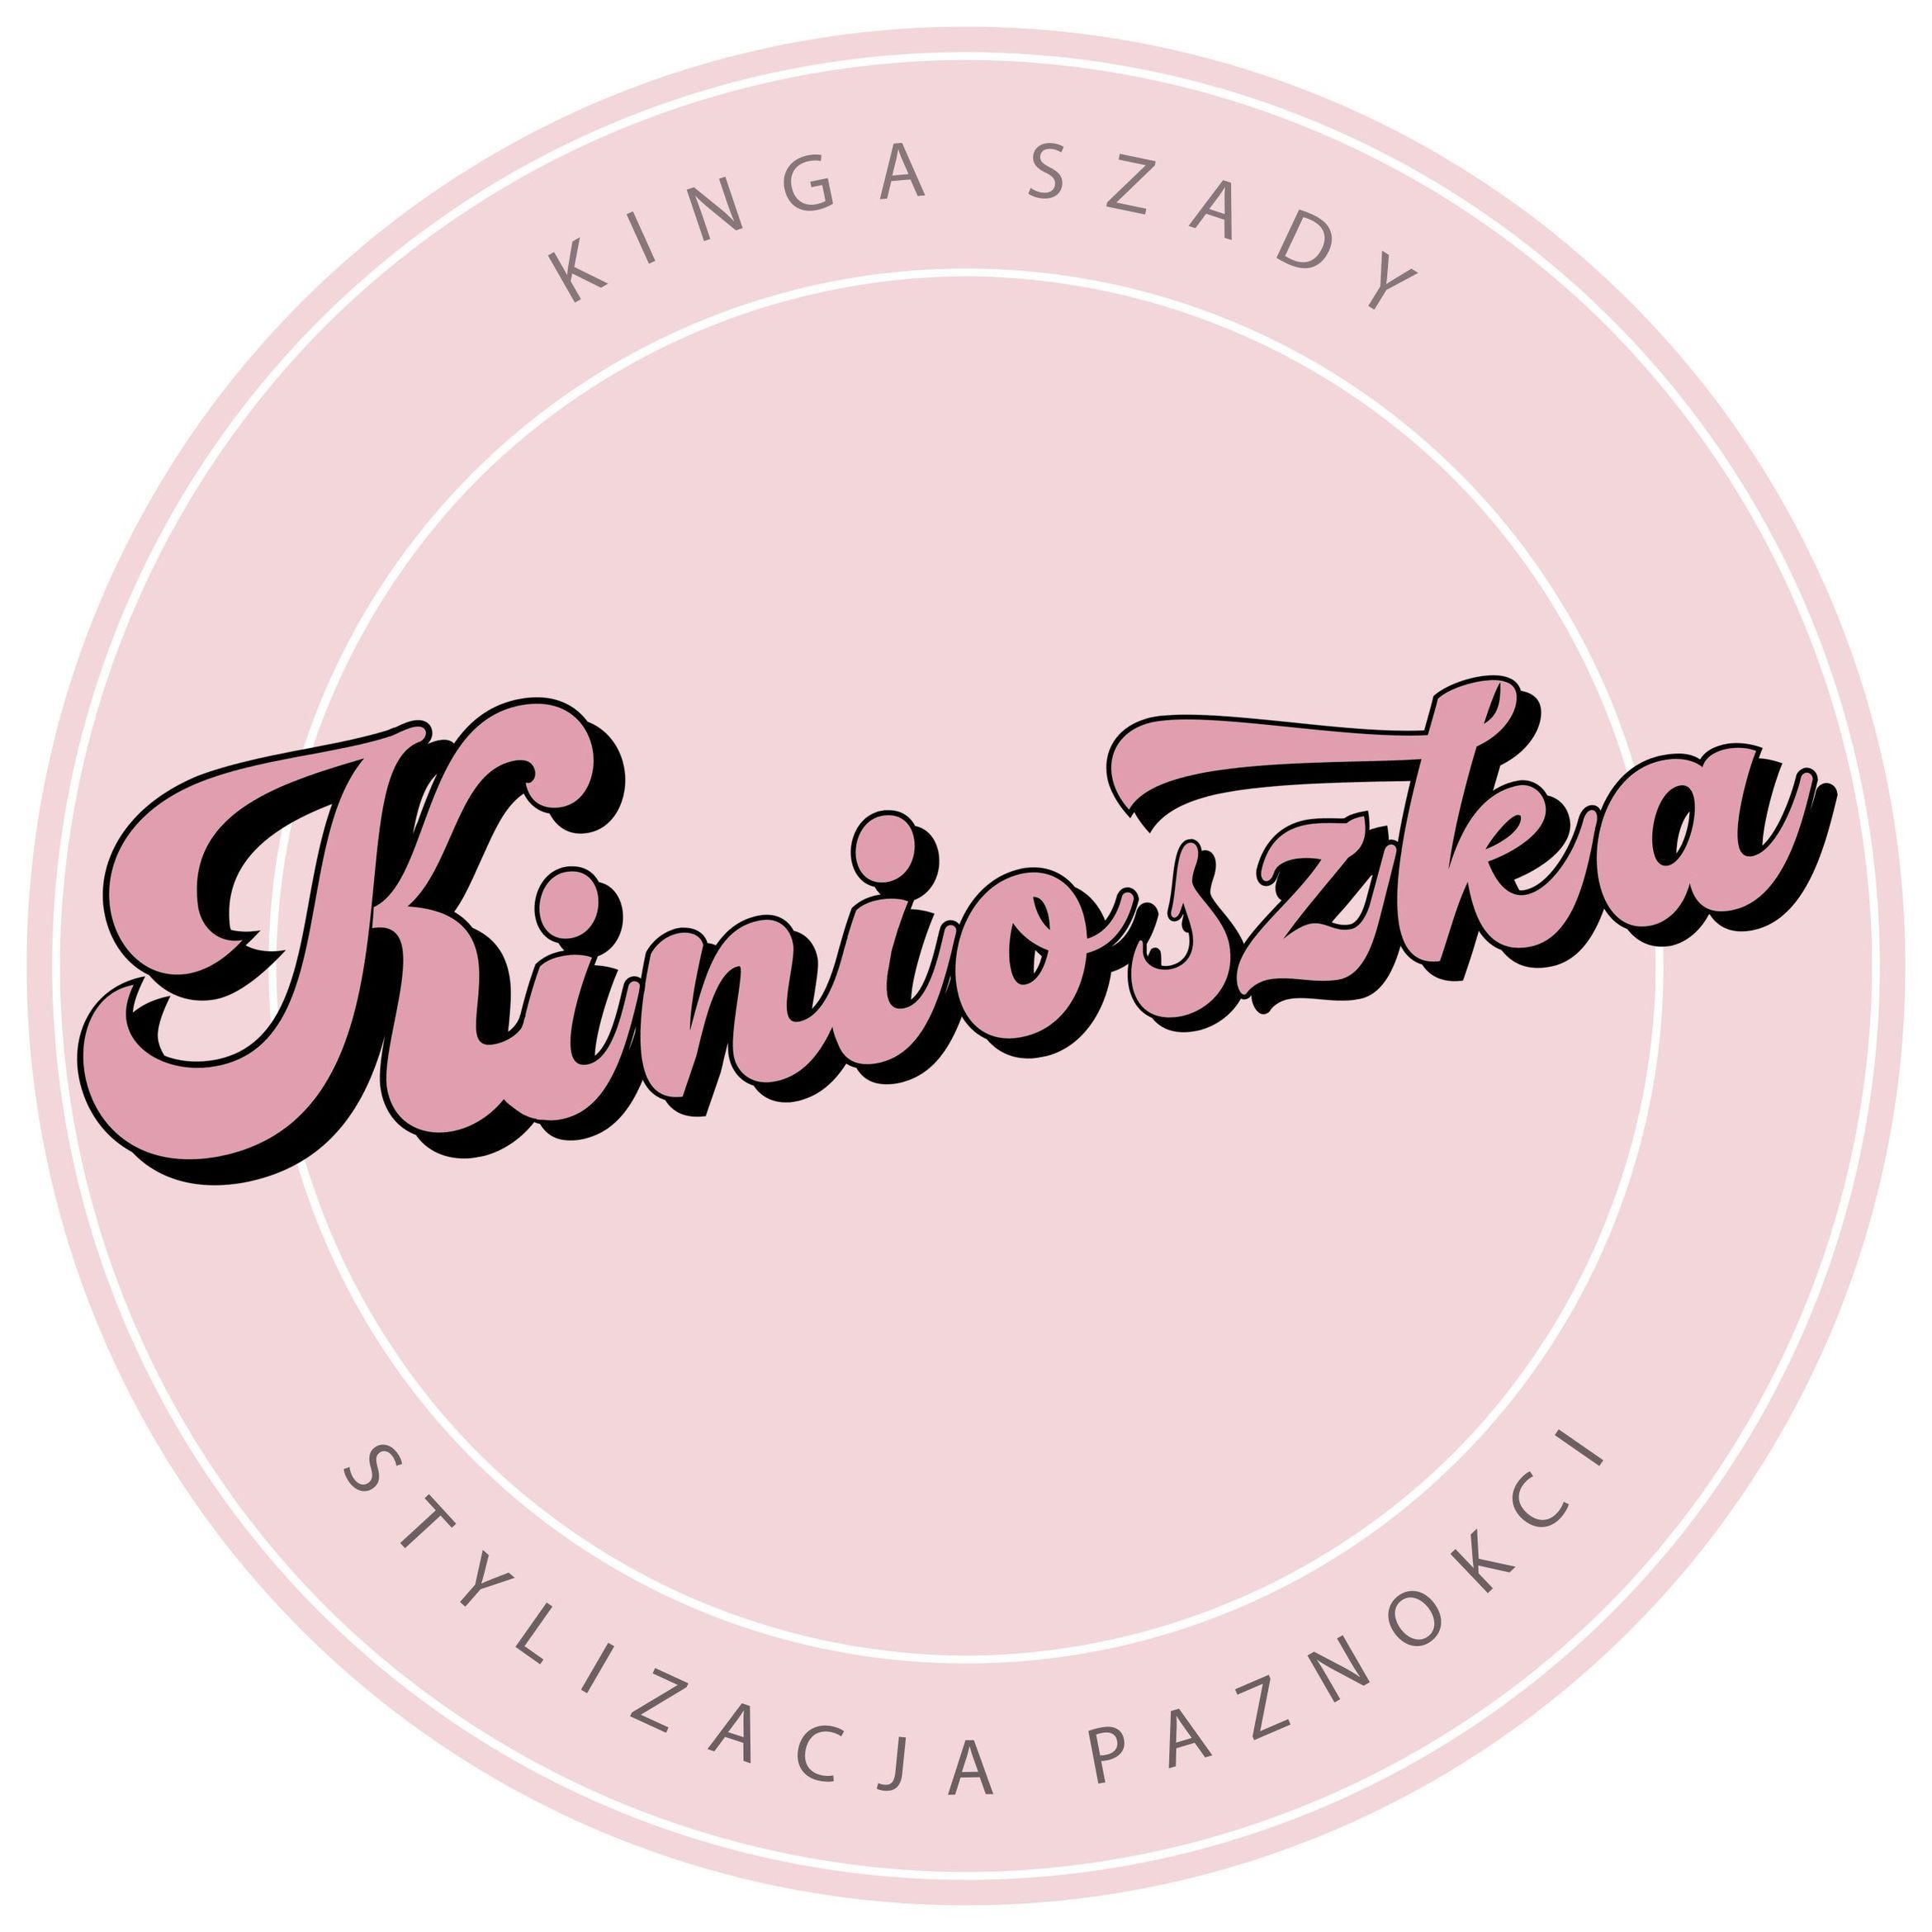 Kinioszka, Stary Rynek 14, H, 42-202, Częstochowa